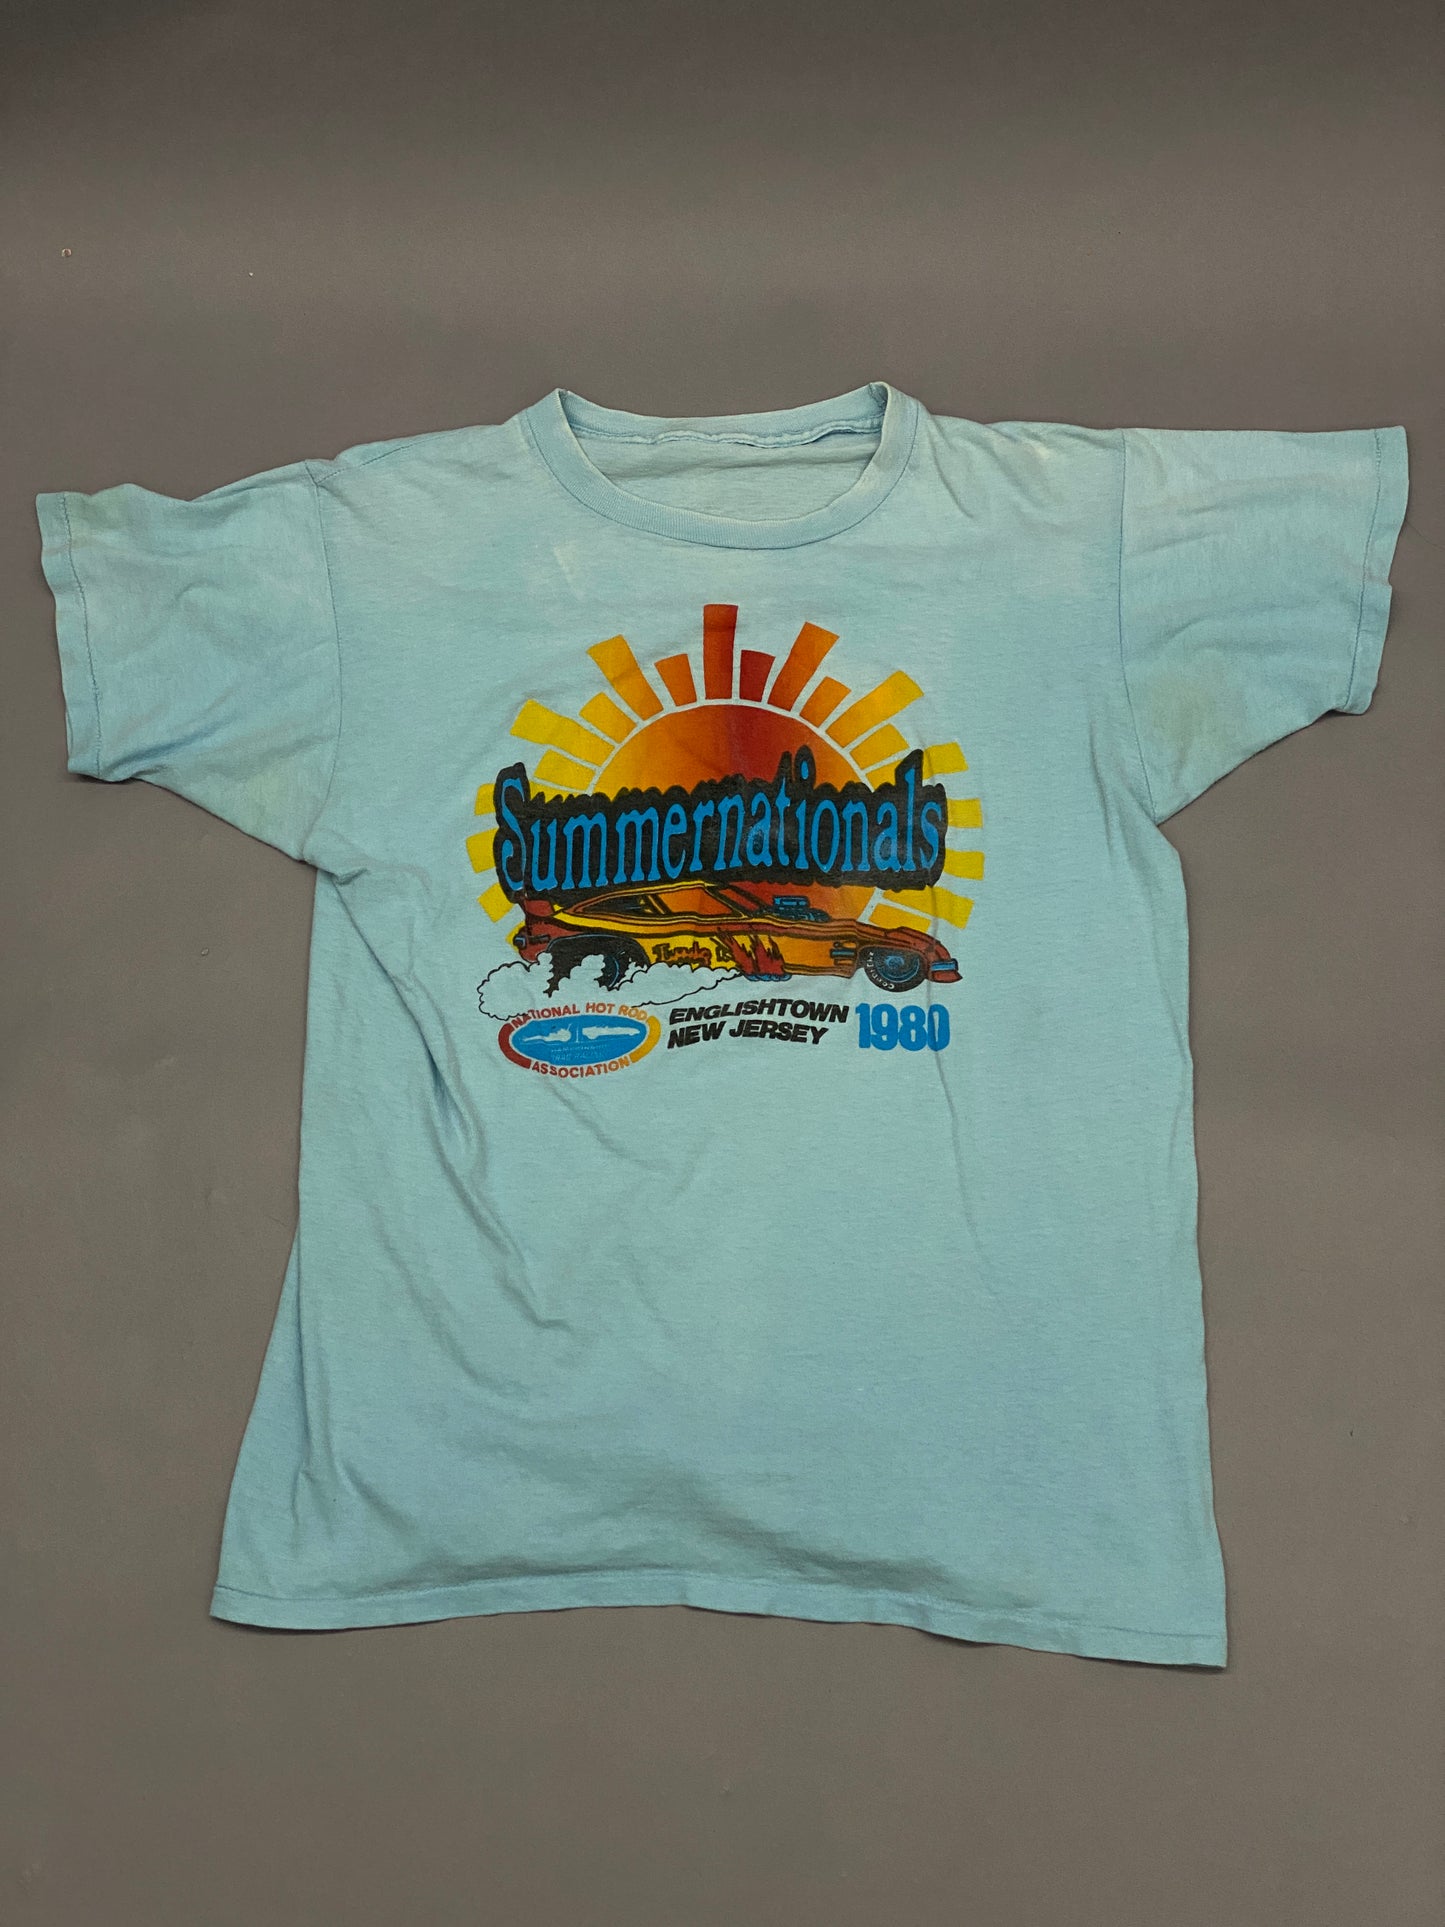 Summernationals 1980 T-shirt